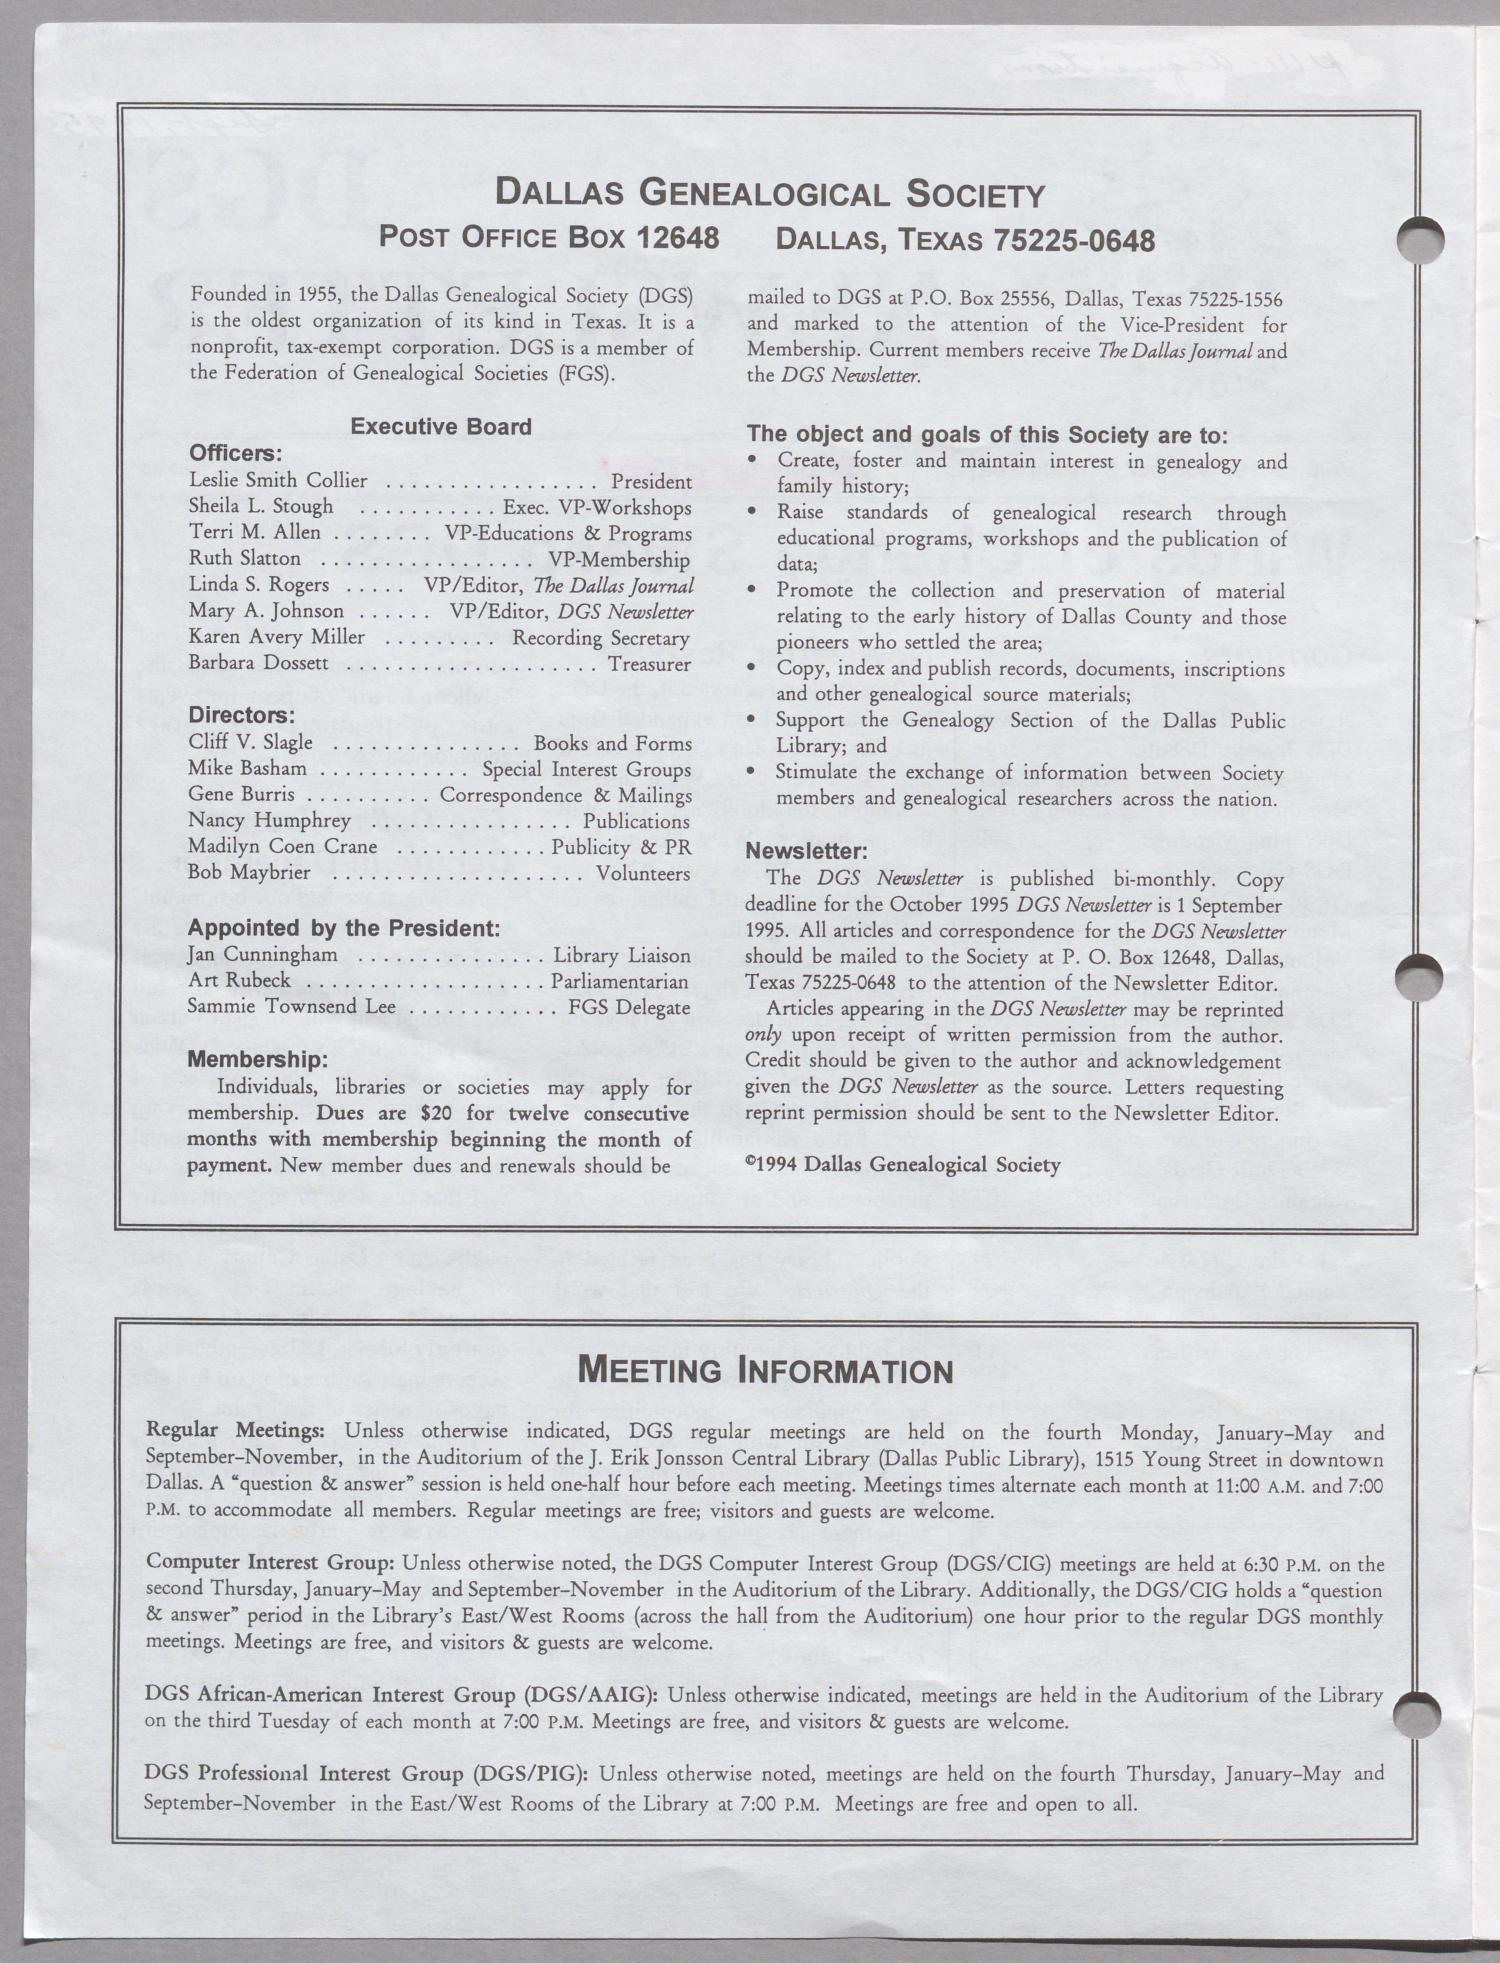 DGS Newsletter, Volume 19, Number 5, September 1995
                                                
                                                    98
                                                